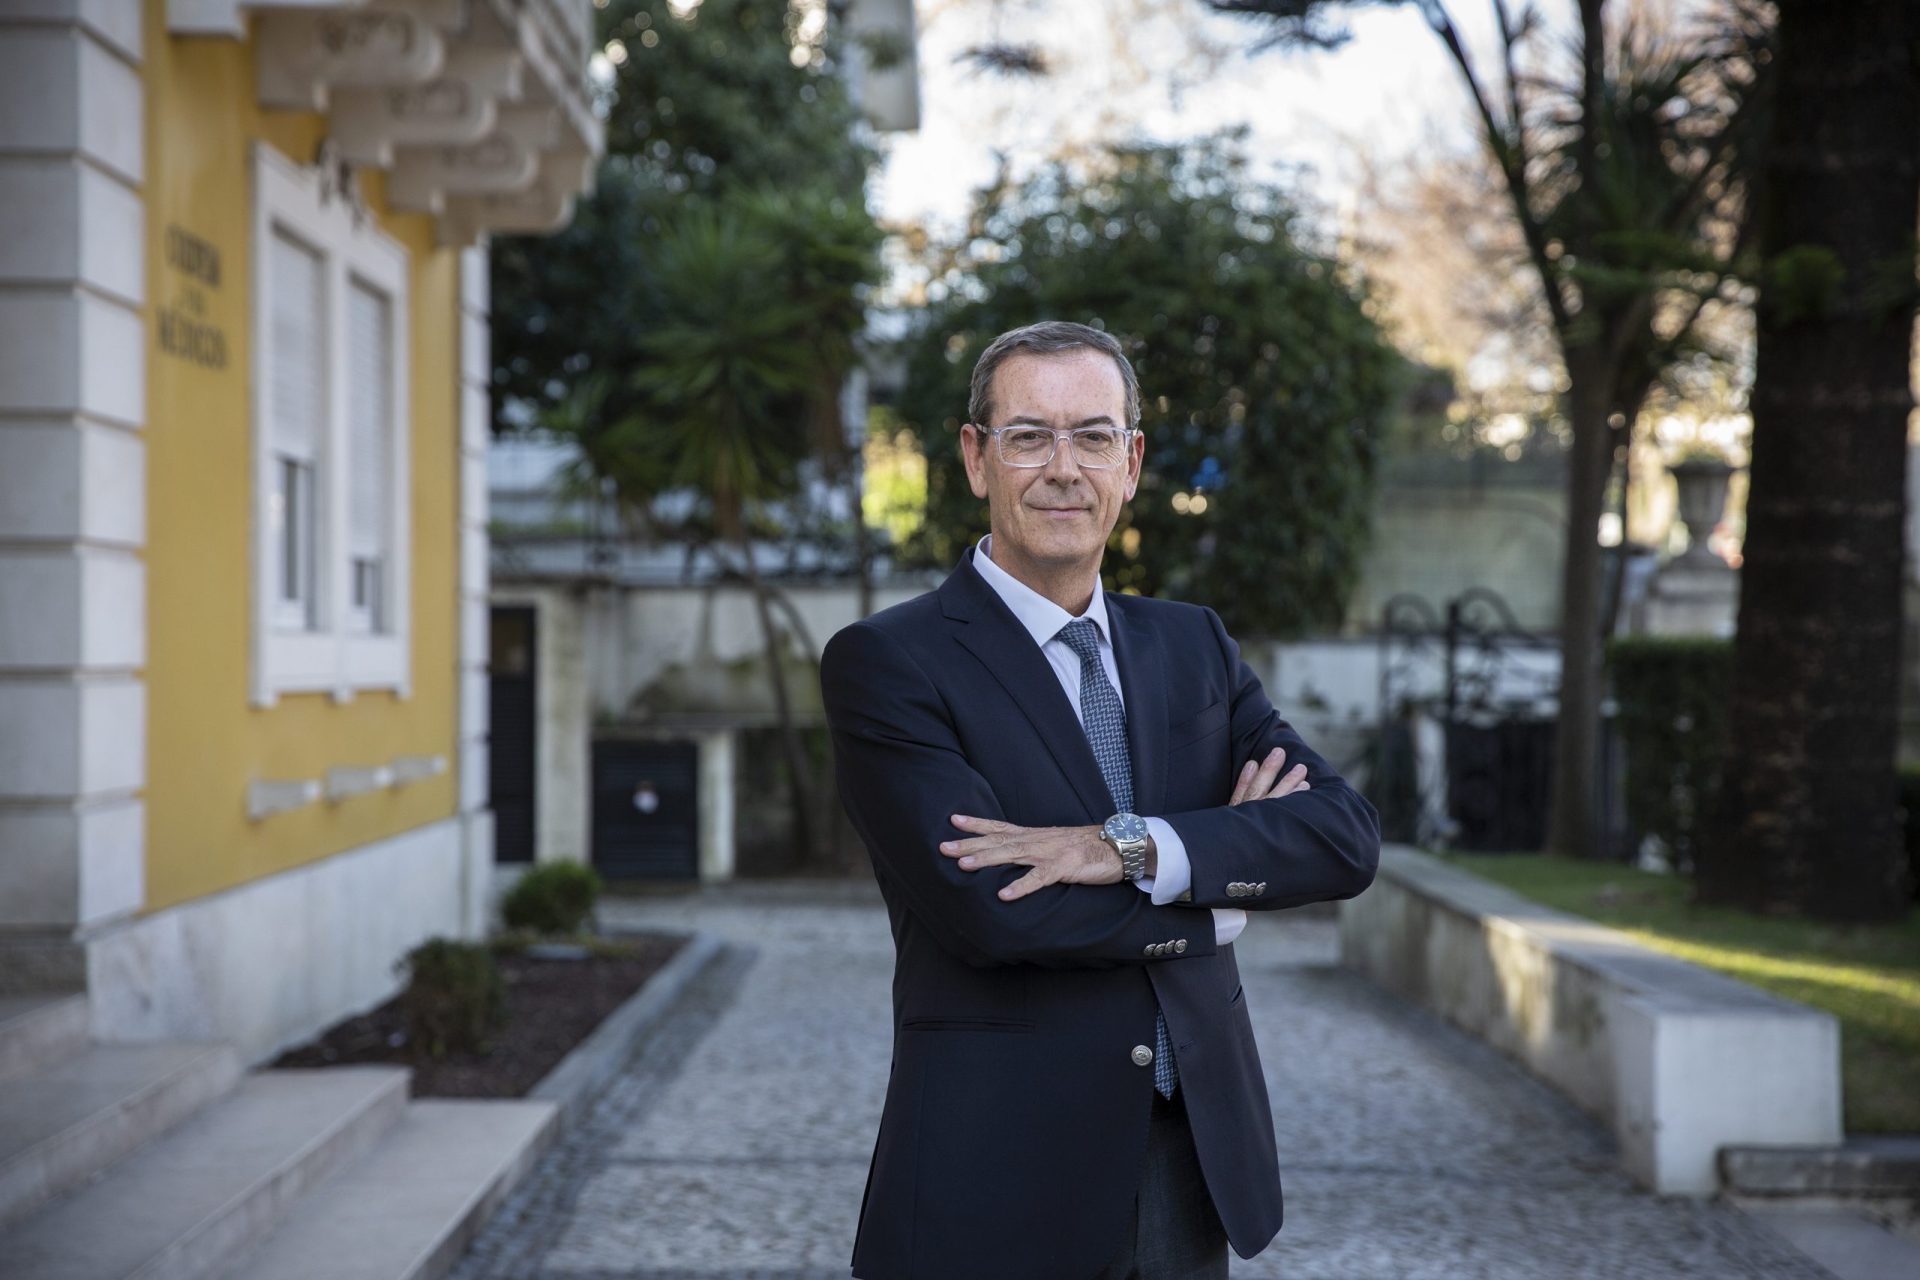 Bastonário diz que vacinação covid-19 obrigatória é “um não assunto em Portugal”